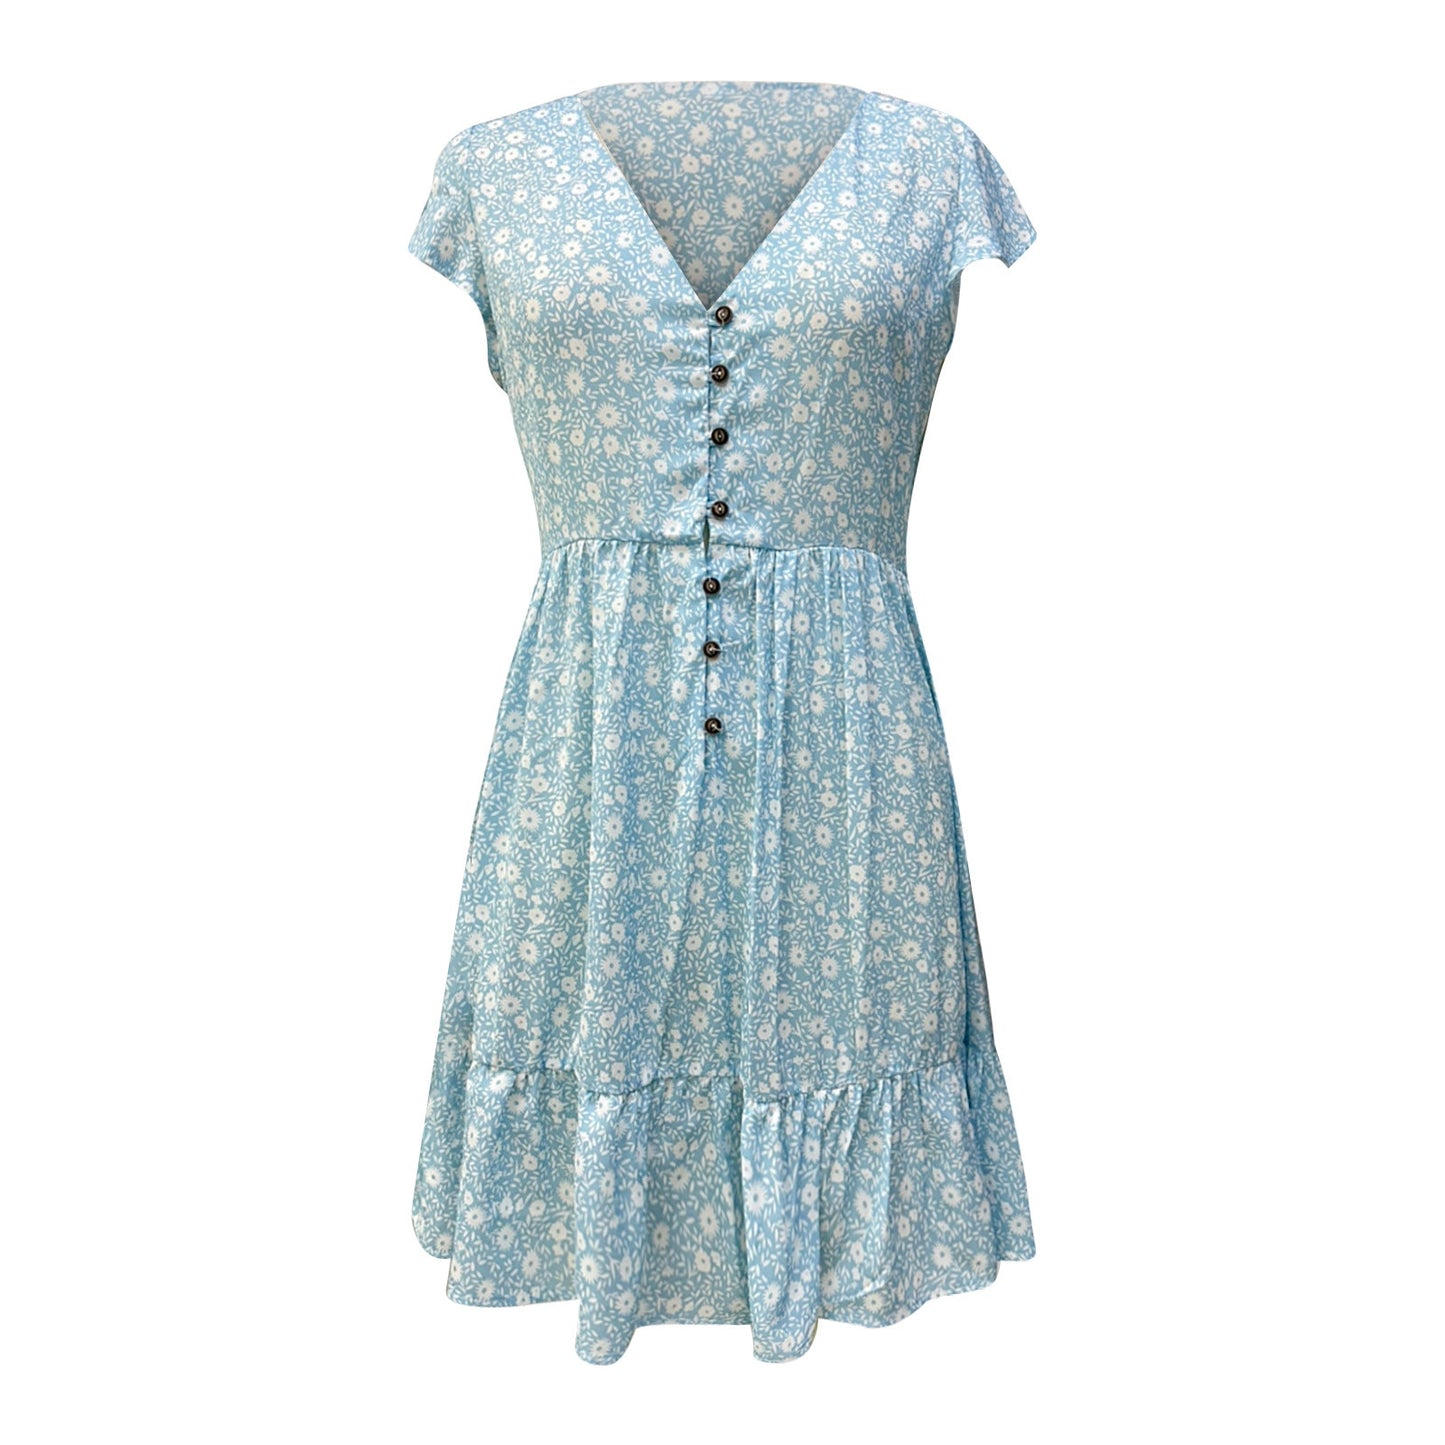 Women's Plus Size V-Neck Floral Summer Dress - blueselections